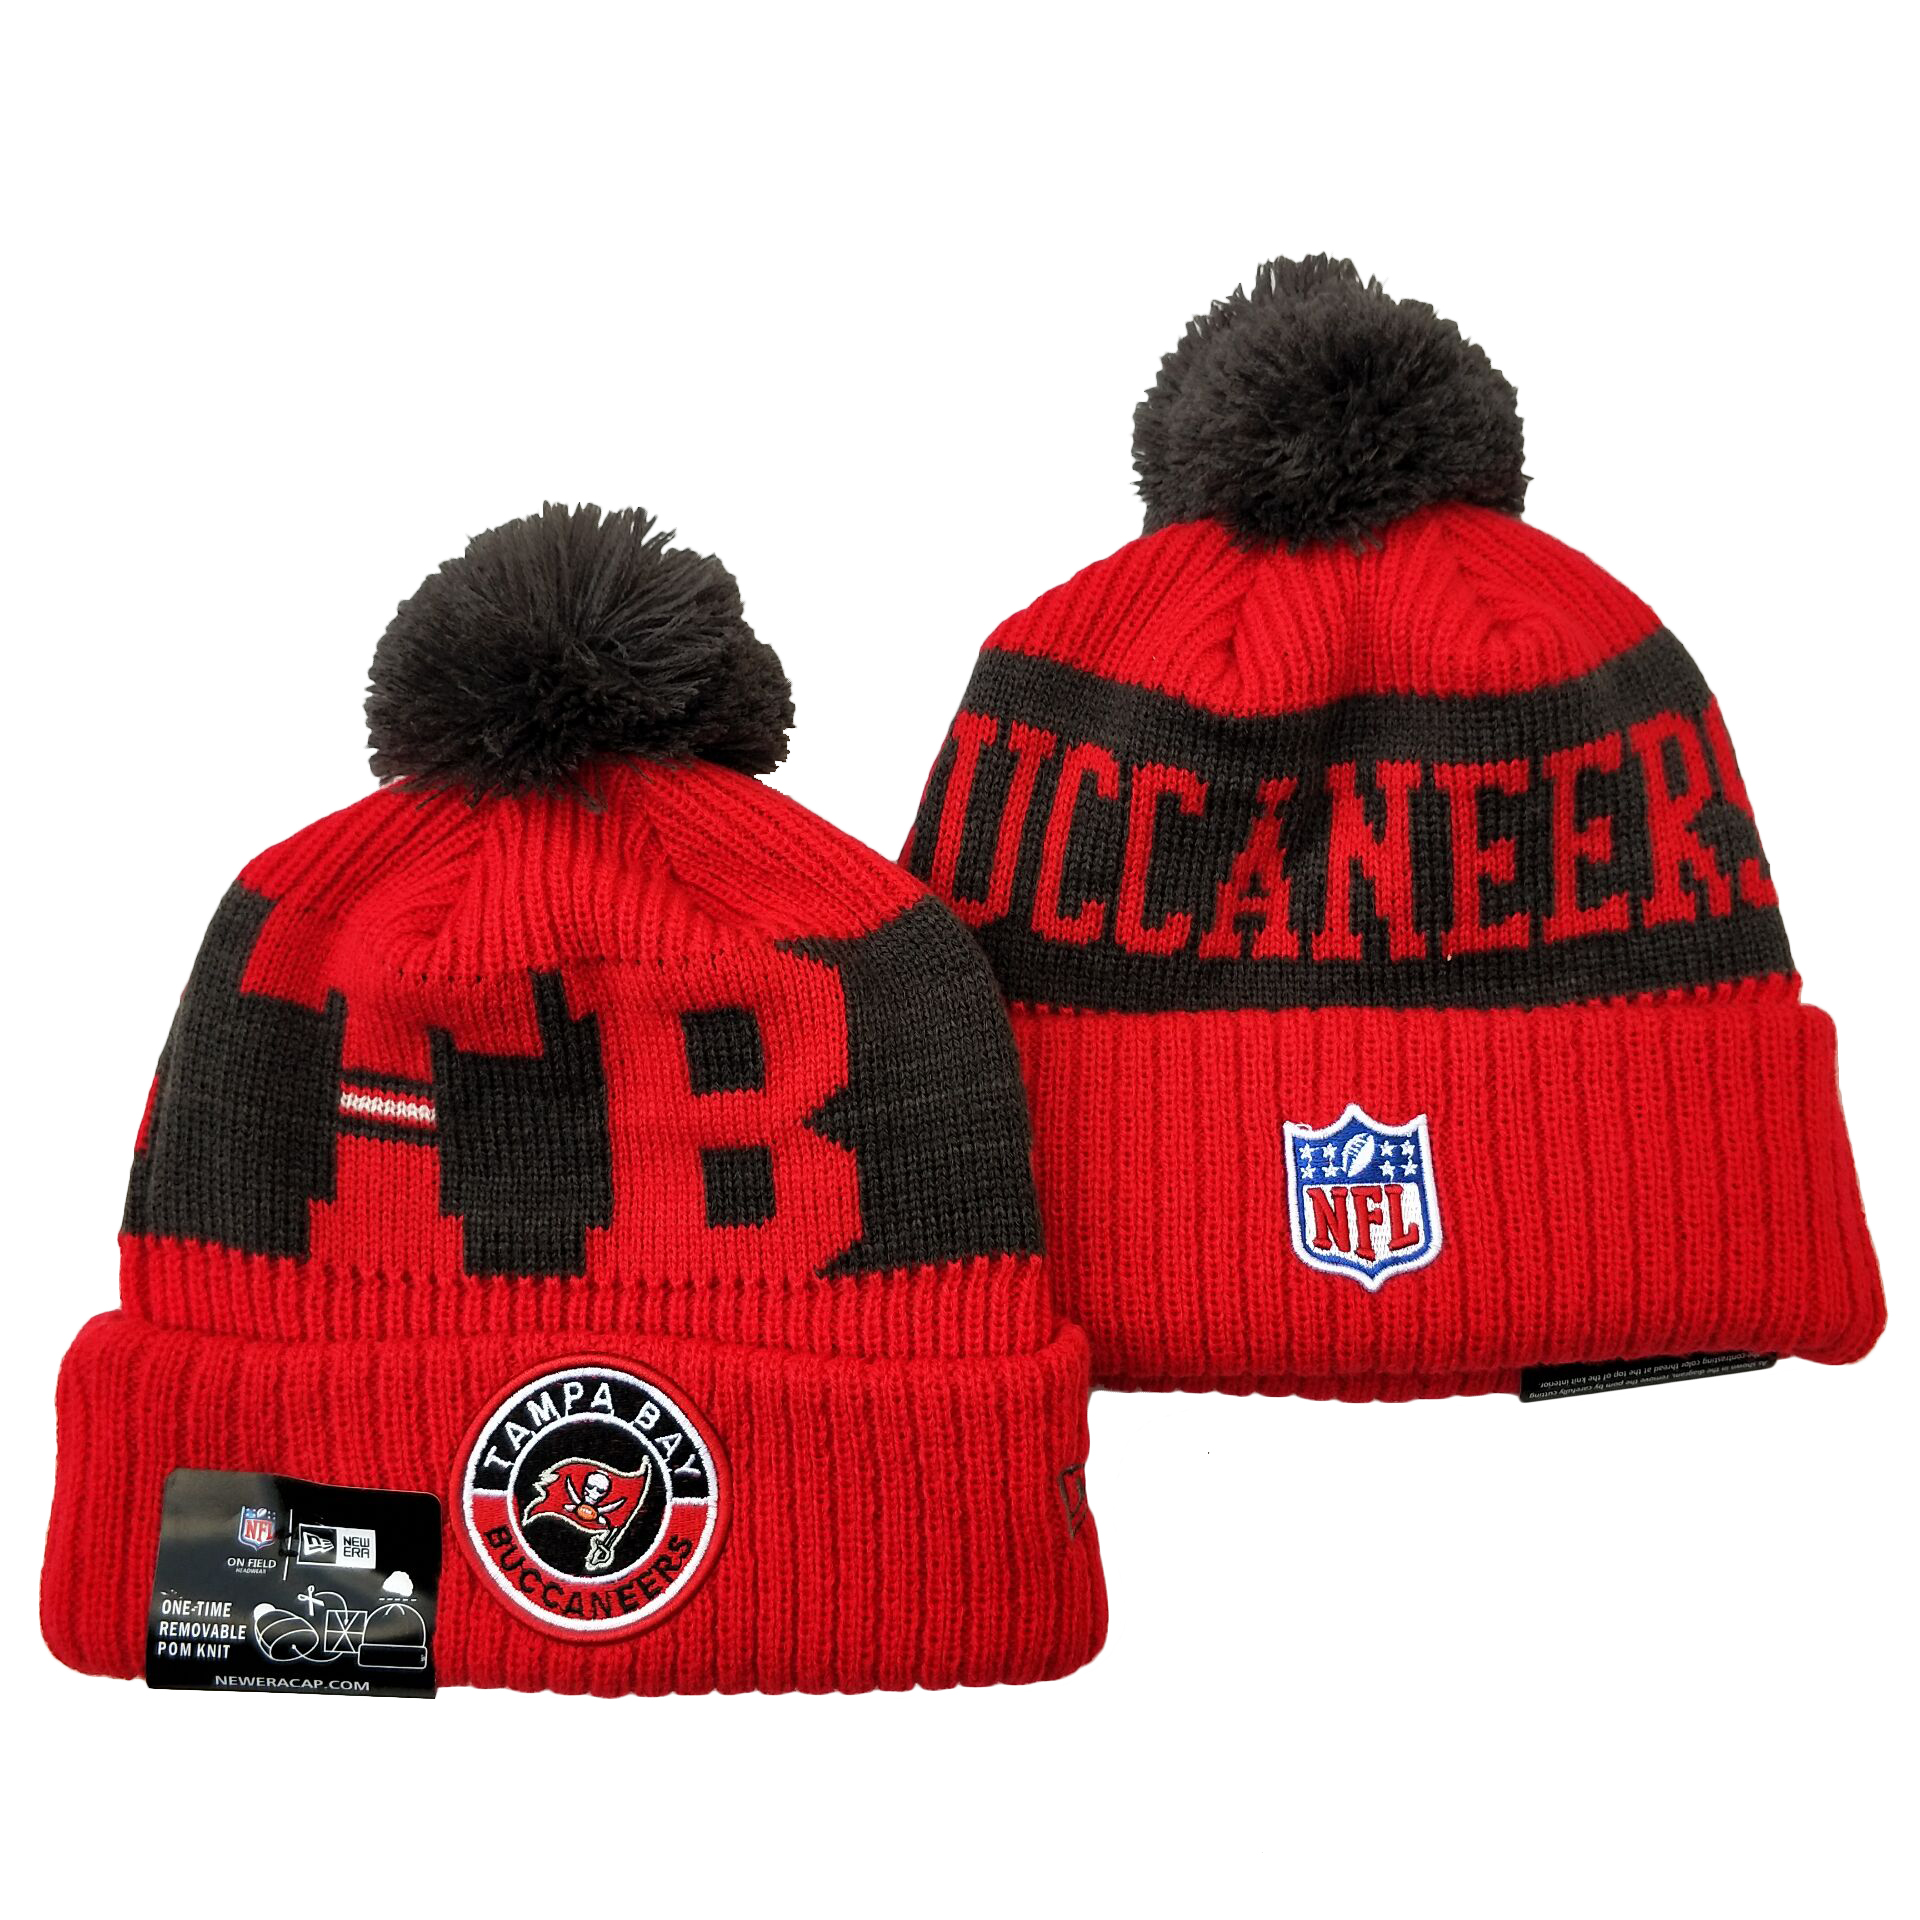 Buccaneers Team Logo Red 2020 NFL Sideline Pom Cuffed Knit Hat YD